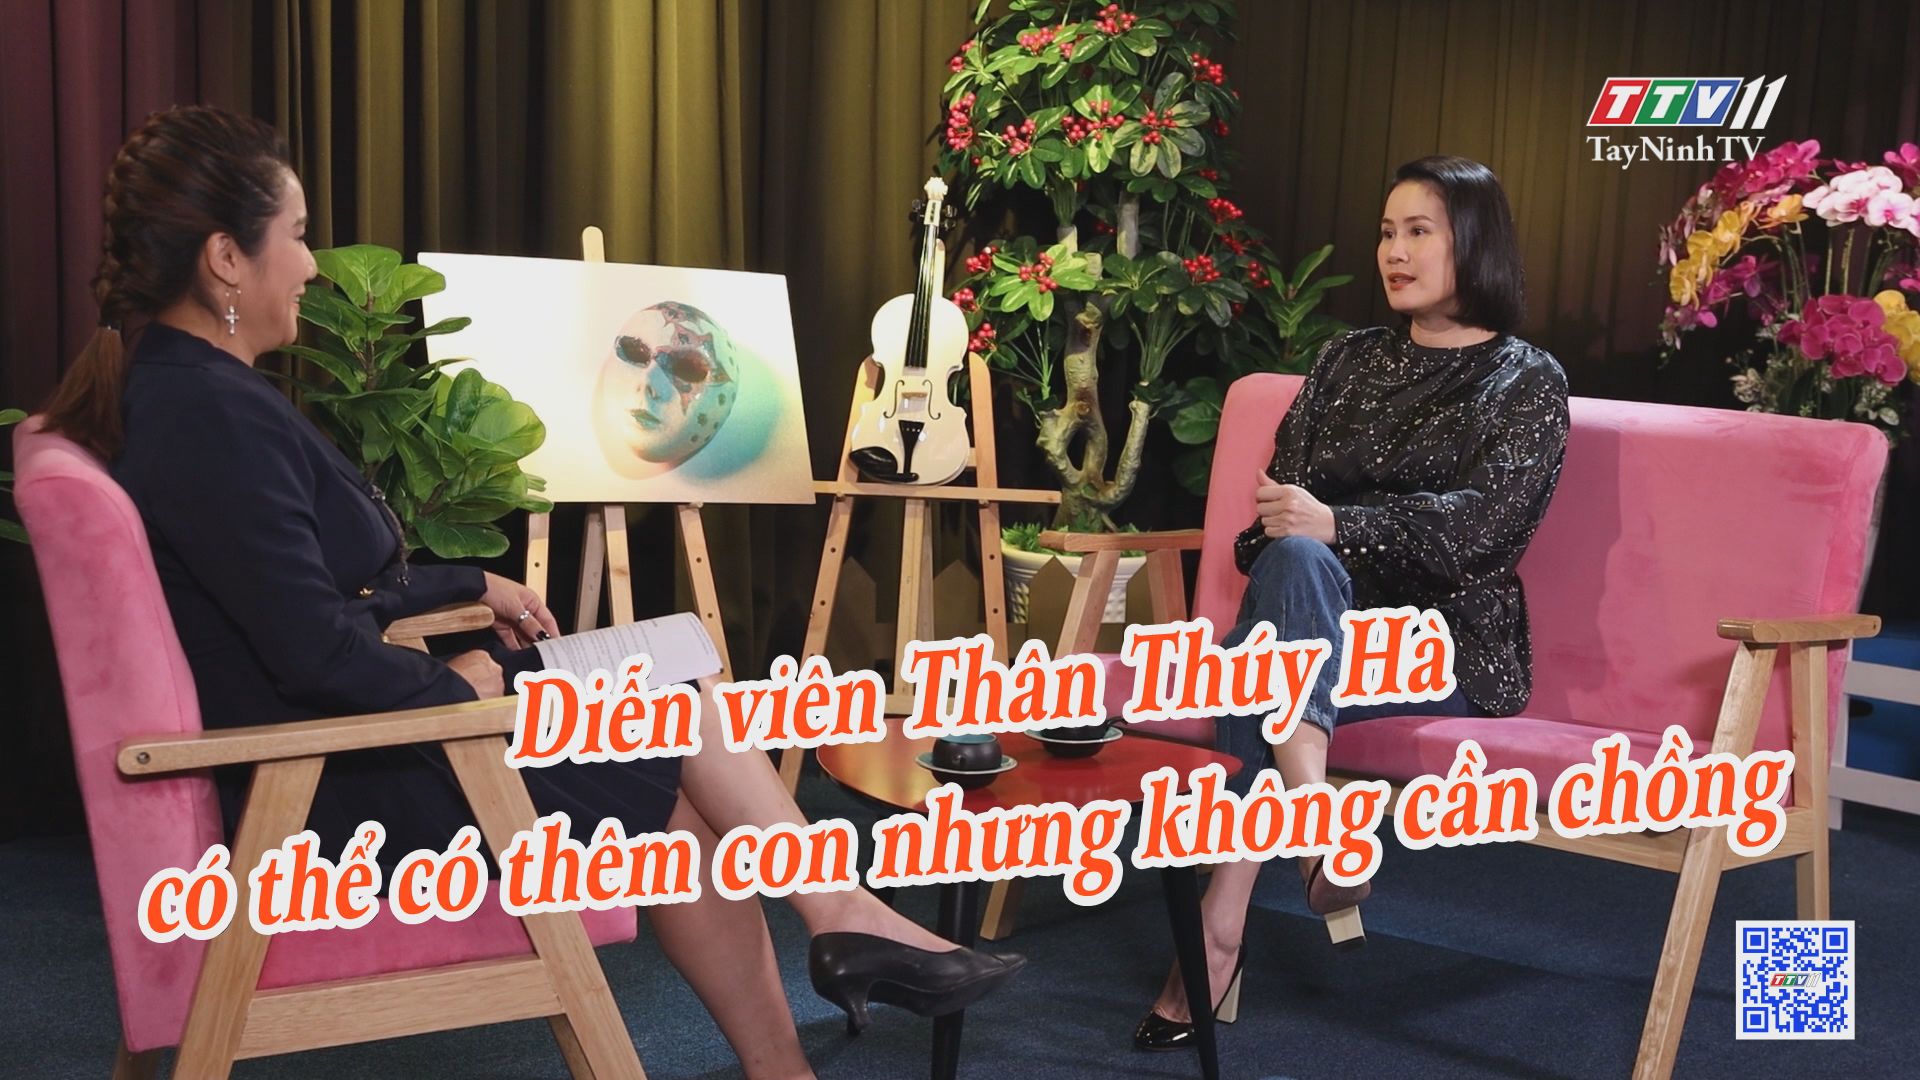 Diễn viên Thân Thúy Hà có thể có thêm con nhưng không cần chồng | HẠNH PHÚC Ở ĐÂU | TayNinhTV